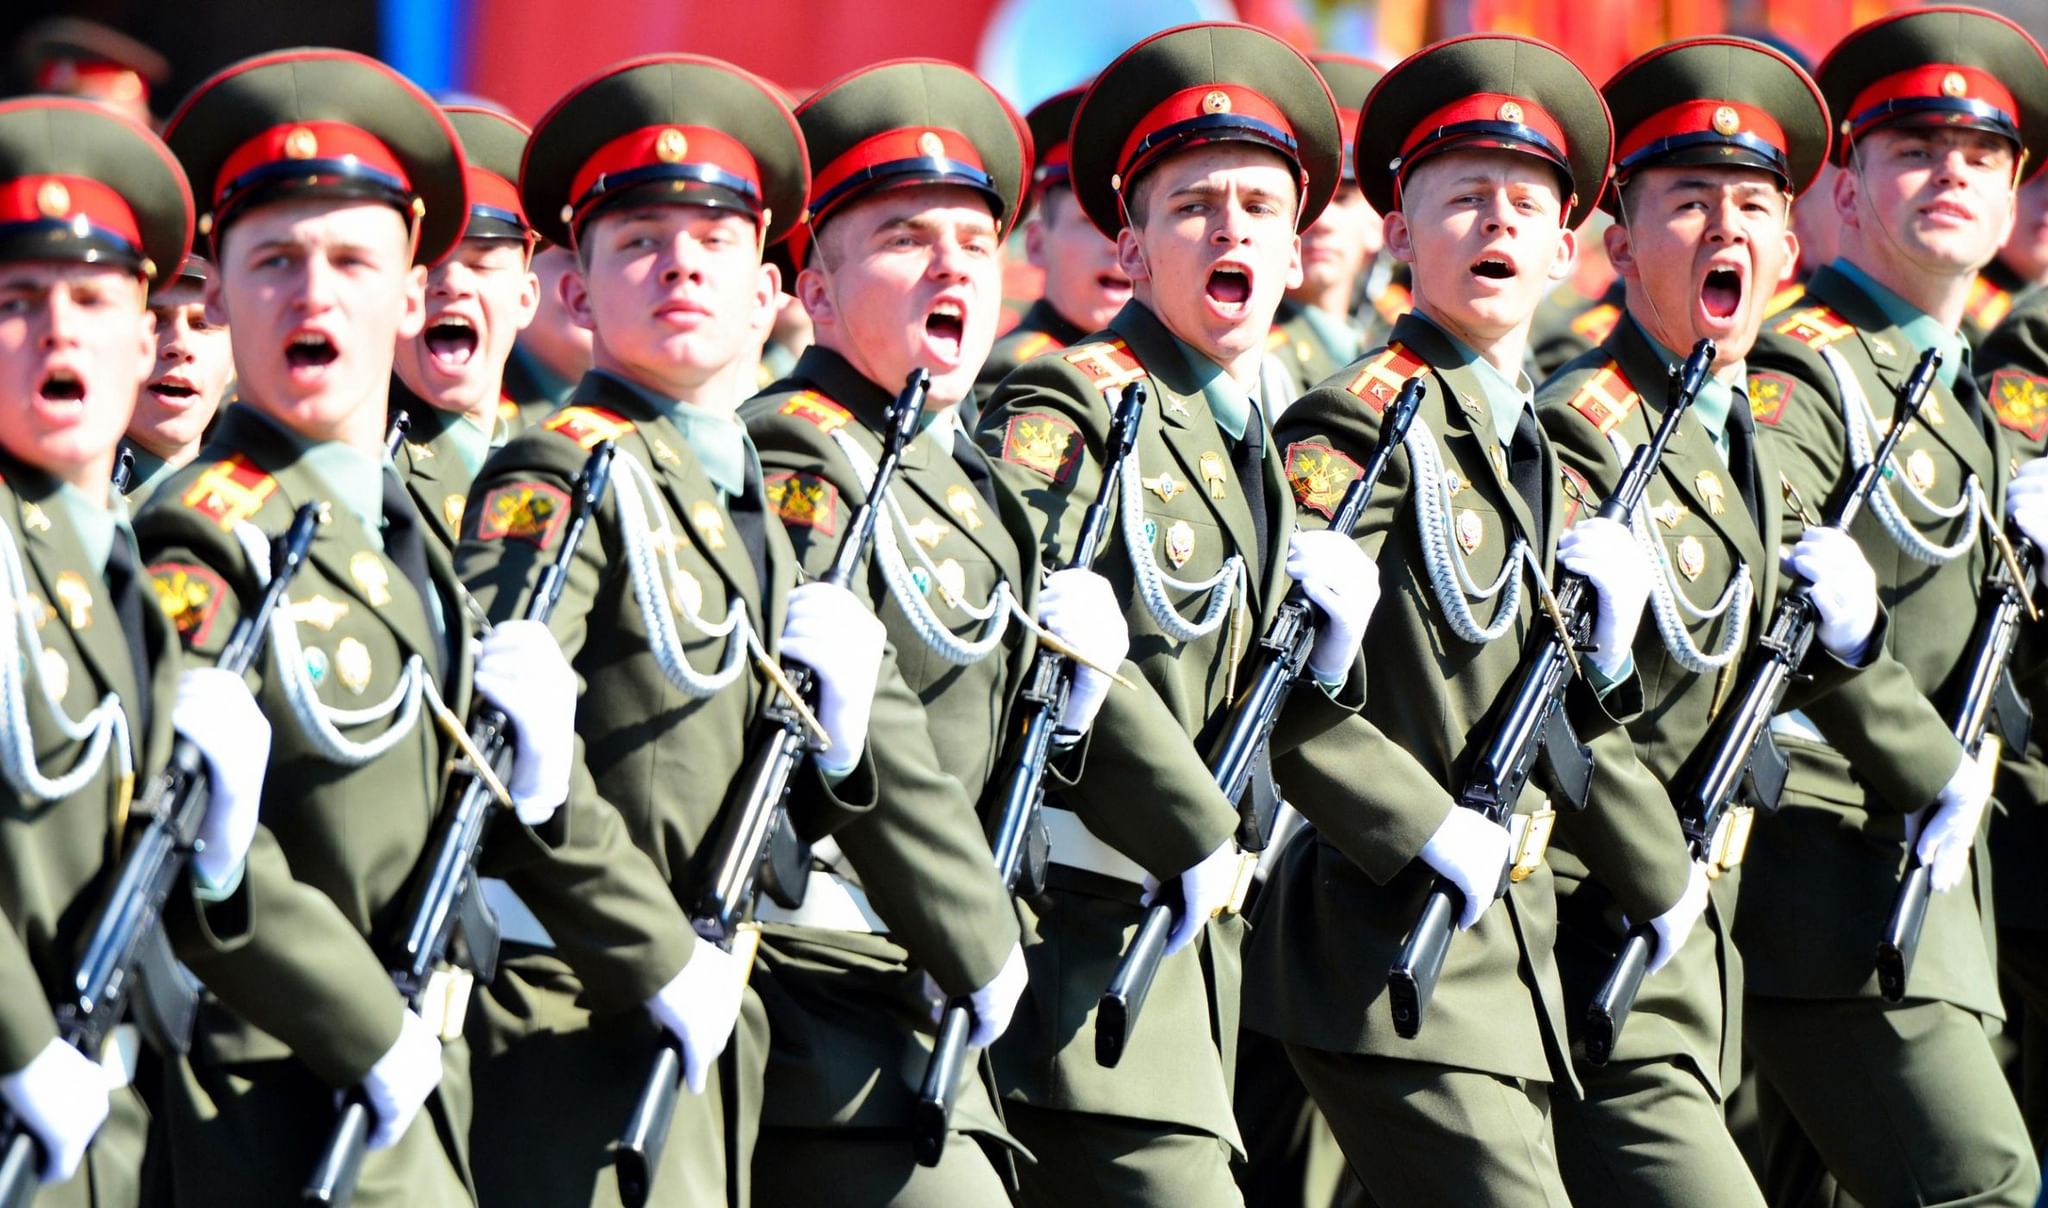 Маршировать под песню. Солдаты на параде. Солдаты маршируют. Российский солдат на параде. Русские солдаты на параде.